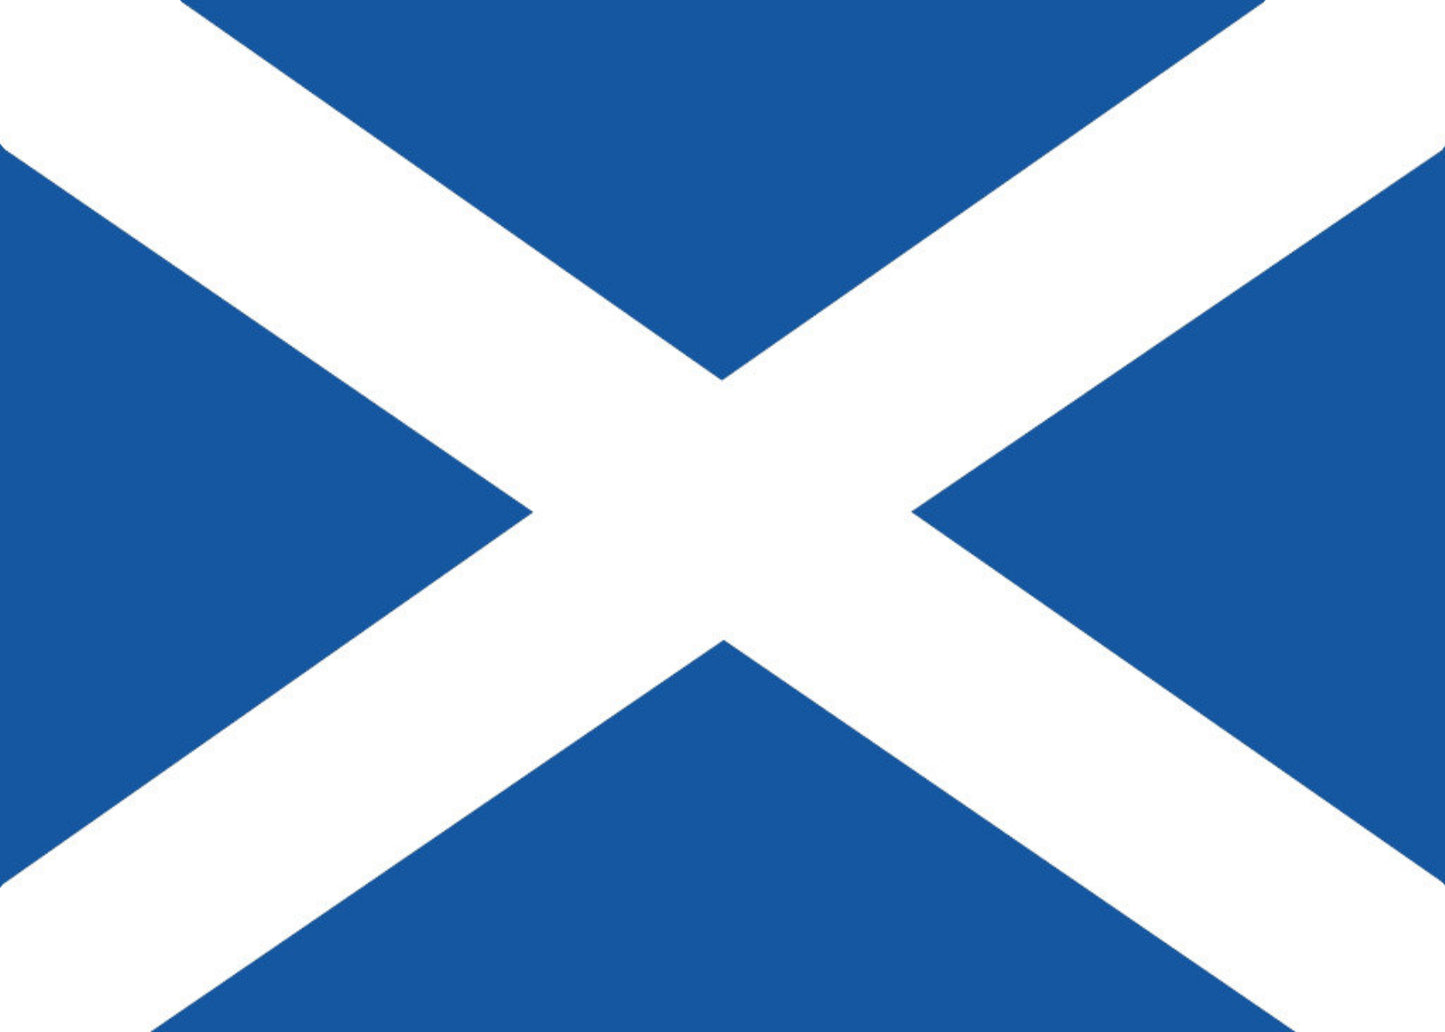 Inhaber eines Reisepasses der Republik Schottland